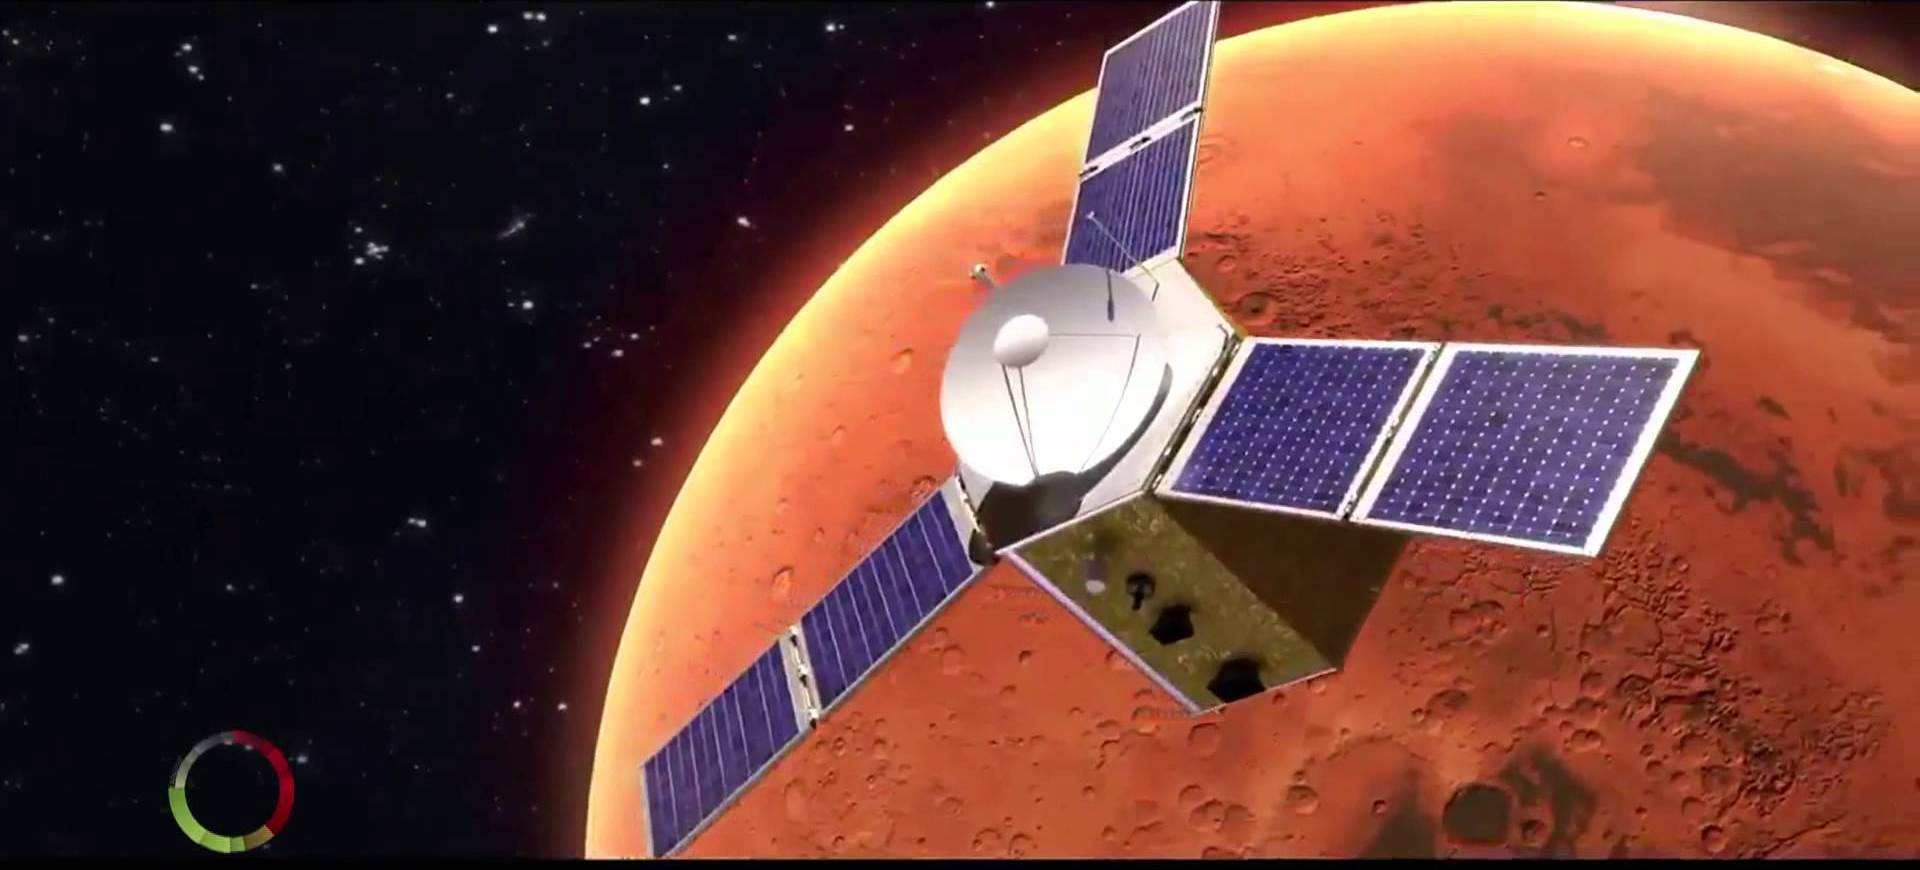 Першу арабську місію на Марс запустила ОАЕ